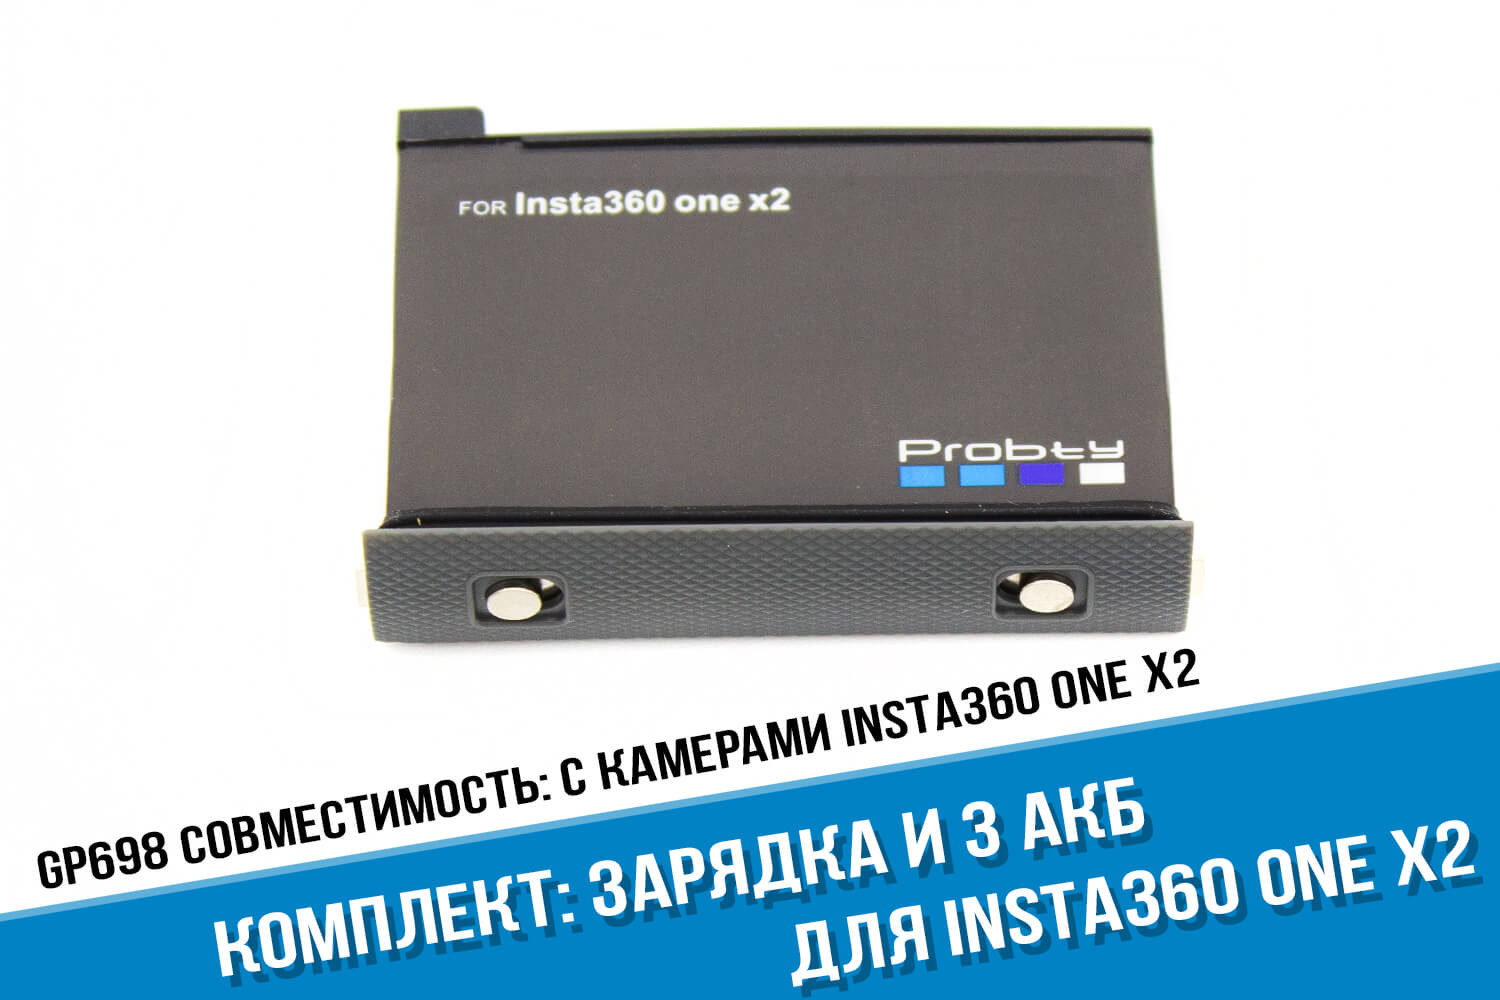 Зарядка на три аккумулятора для экшн-камеры Insta360 One X2 + 3 аккумулятора